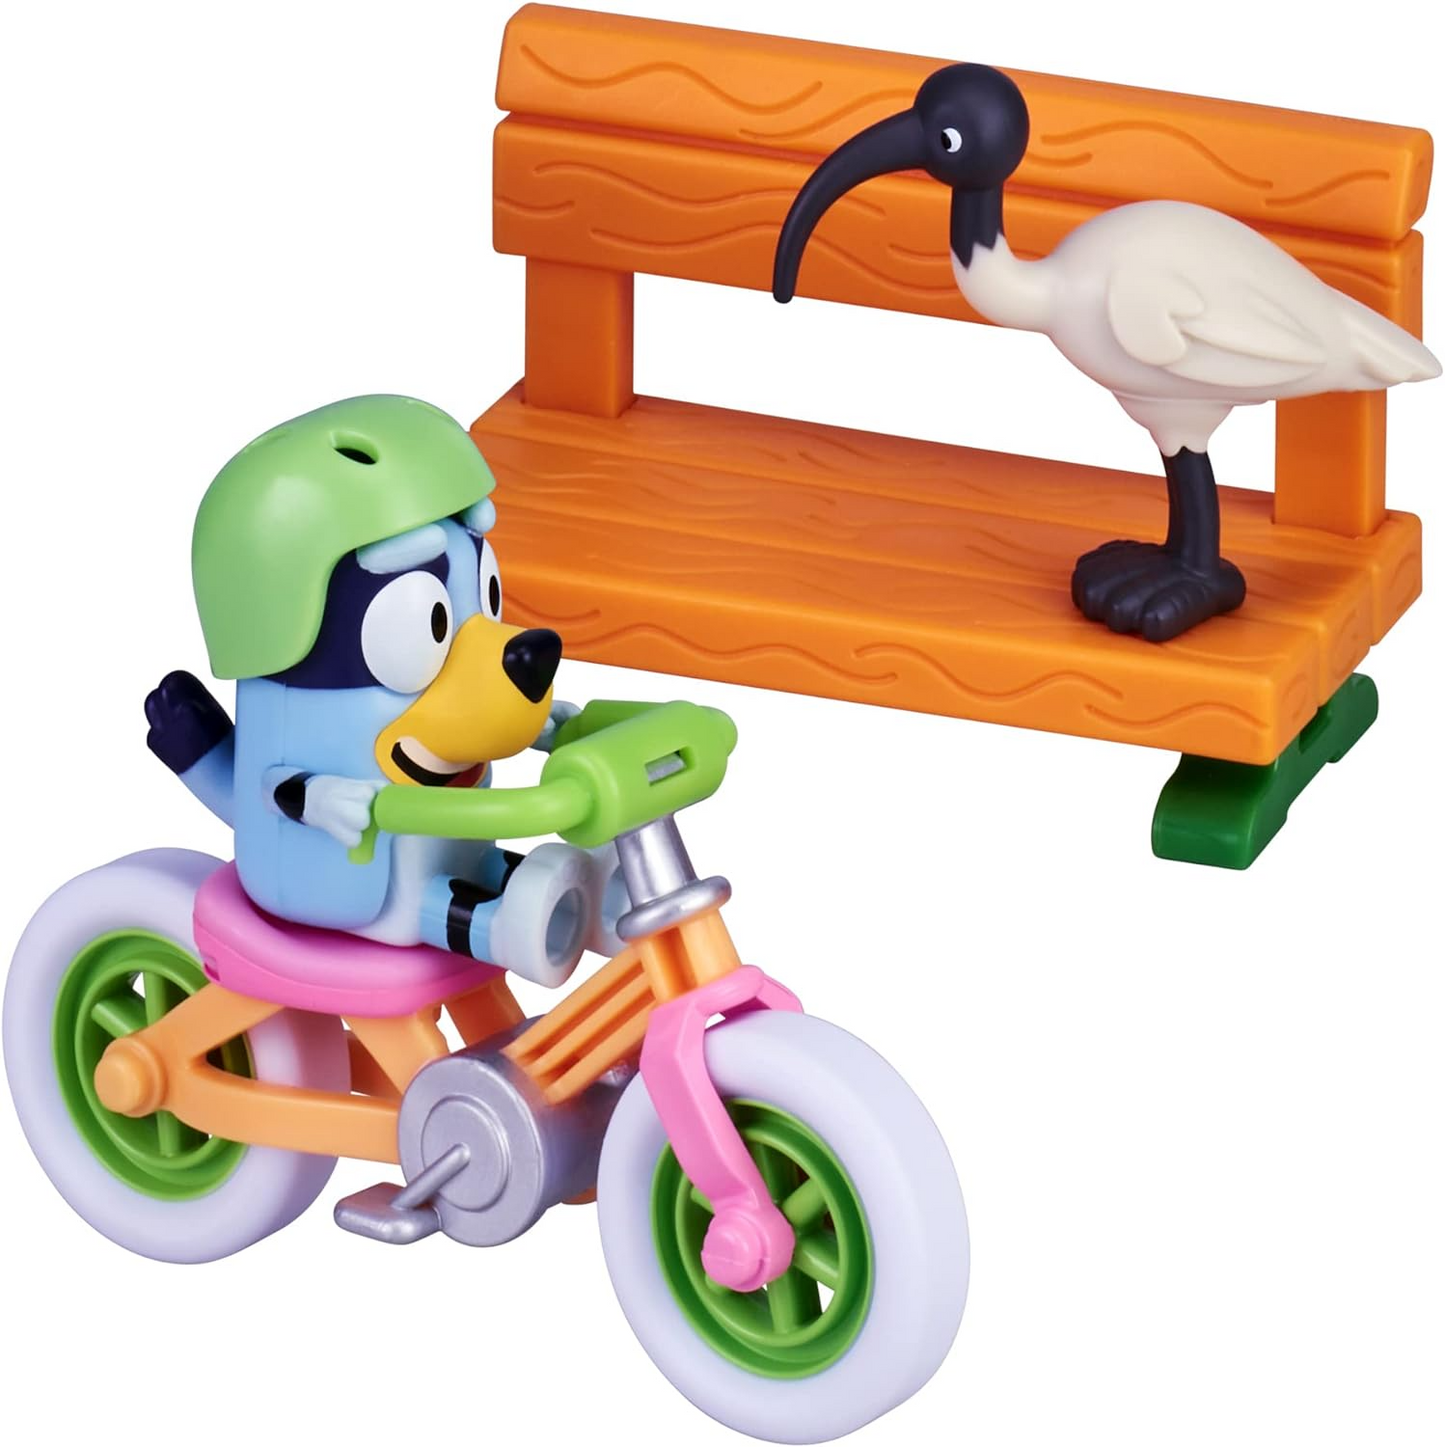 Bluey Playset de bicicleta; Figura de ação colecionável oficial do Bluey de 2,5 a 3 polegadas, incluindo bicicleta, capacete, banco e acessórios de frango do Bluey